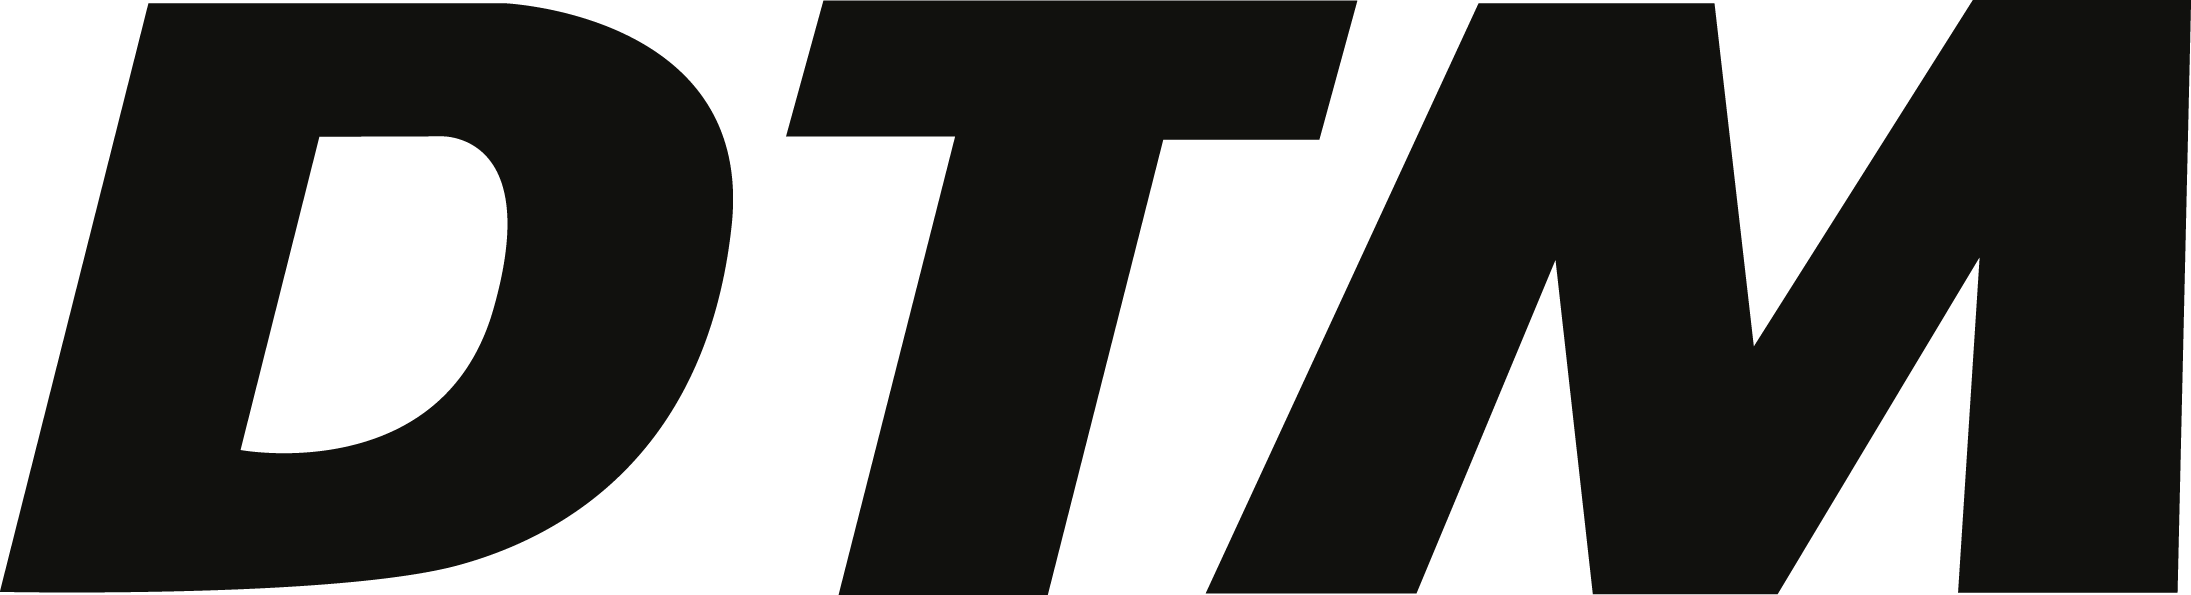 DTM Logo - DTM - Deutsche Tourenwagen Masters Logo Vector Icon Template Clipart ...